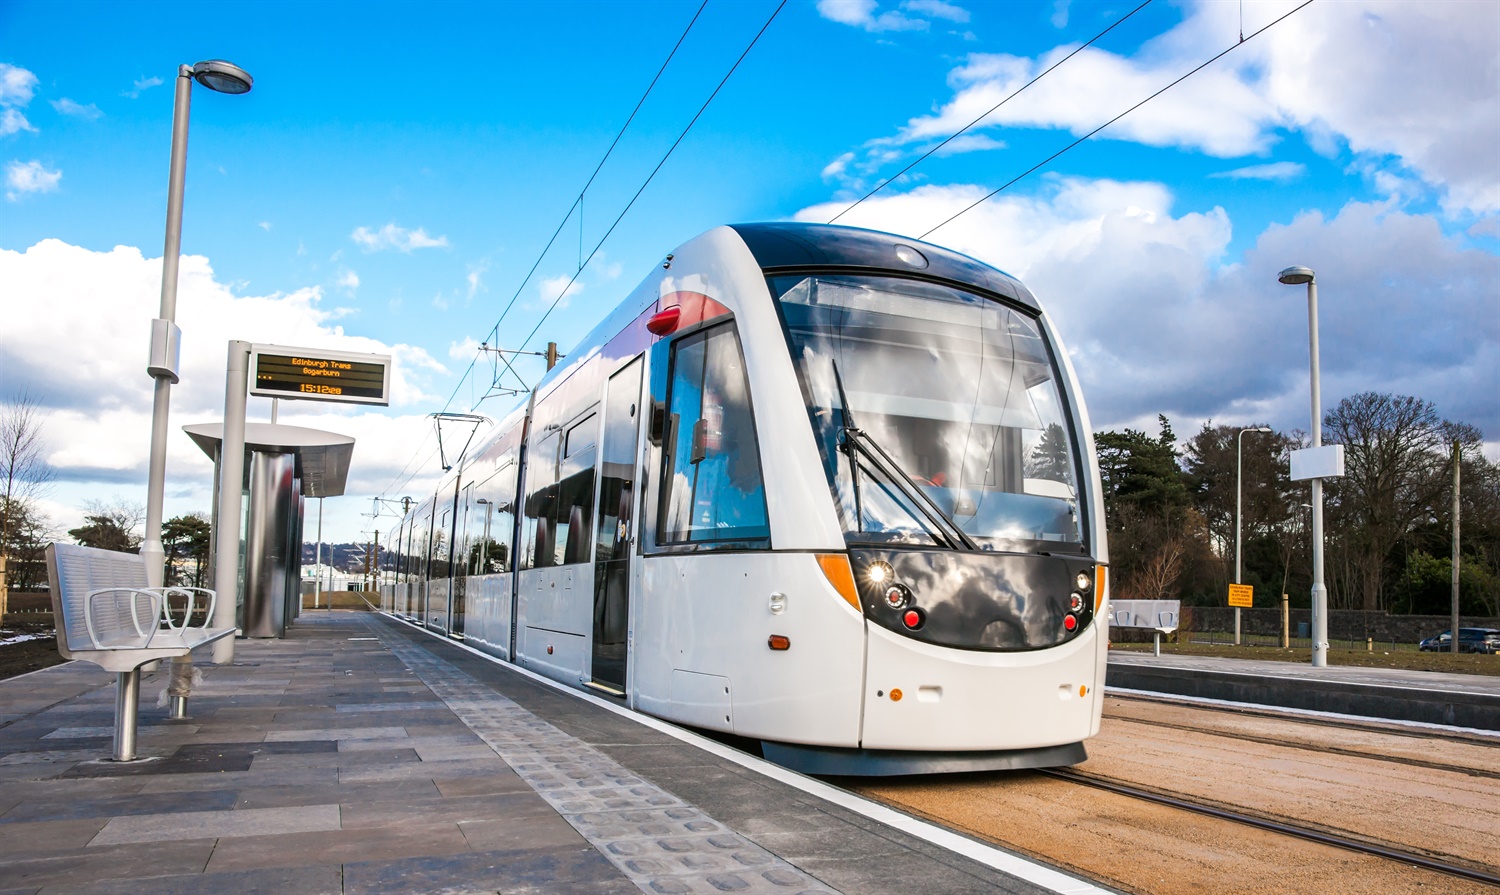 Edinburgh trams passenger numbers exceed targets